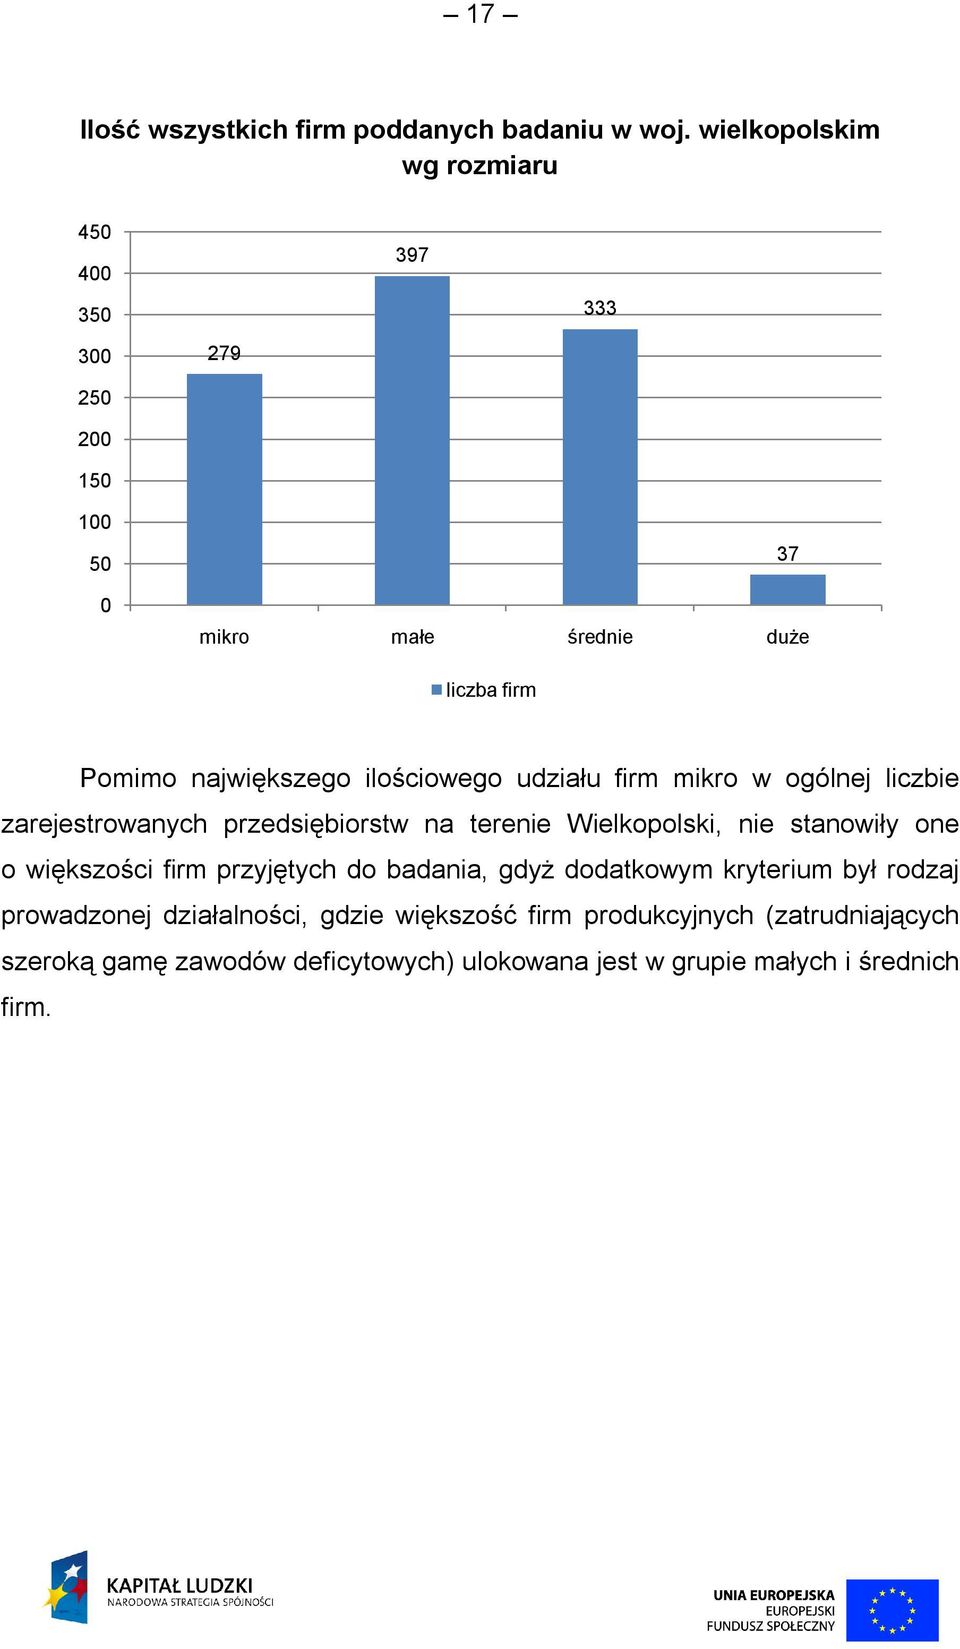 ilościowego udziału firm mikro w ogólnej liczbie zarejestrowanych przedsiębiorstw na terenie Wielkopolski, nie stanowiły one o